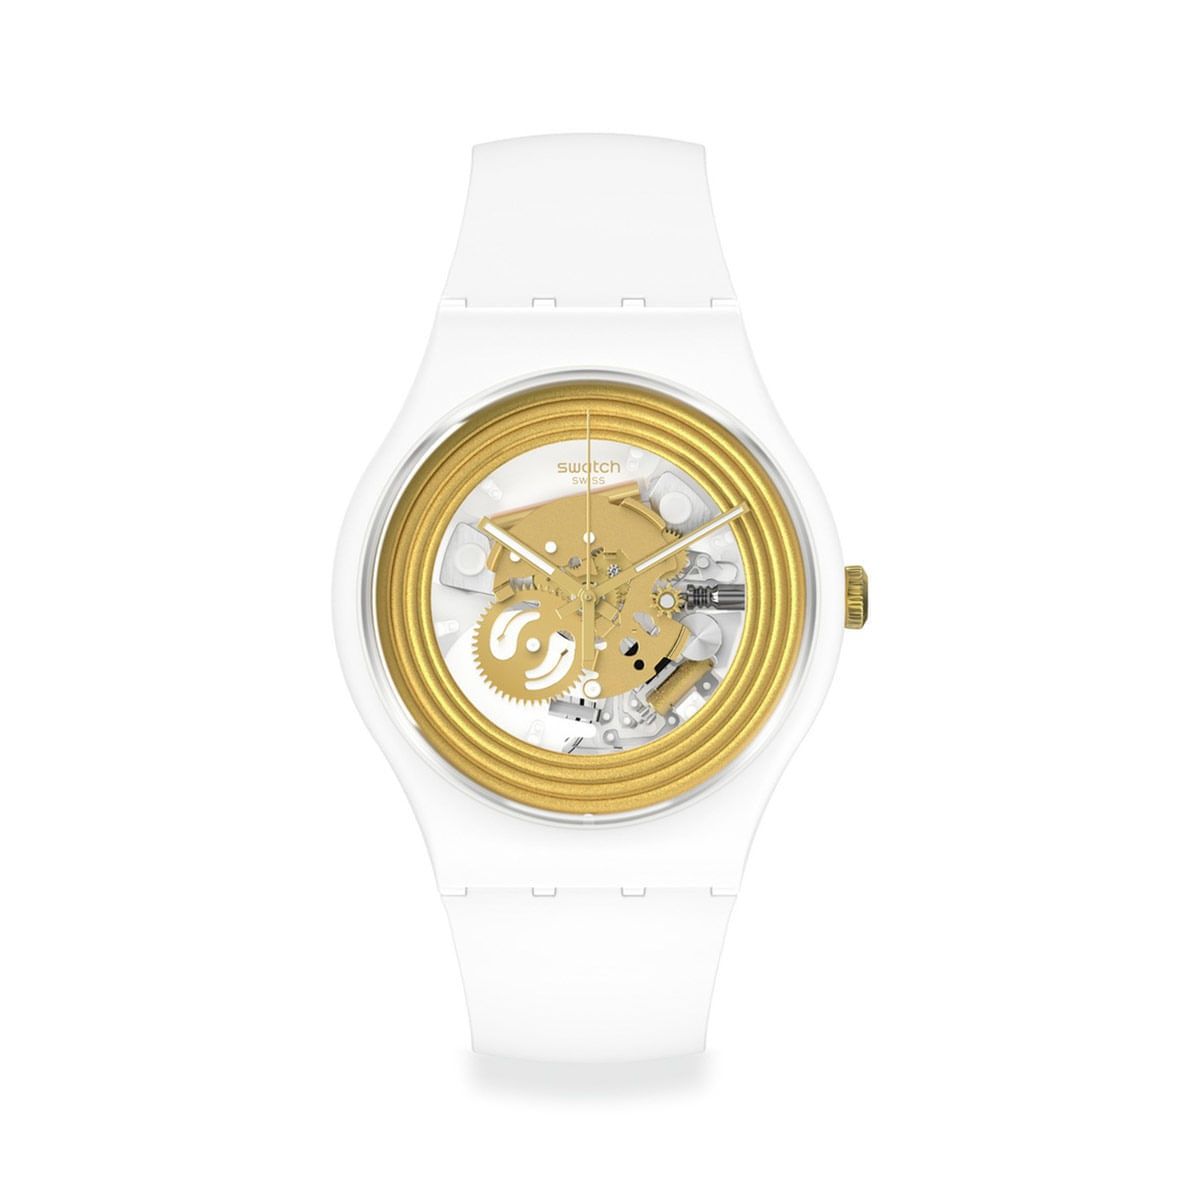 Relógio Swatch dourado e branco